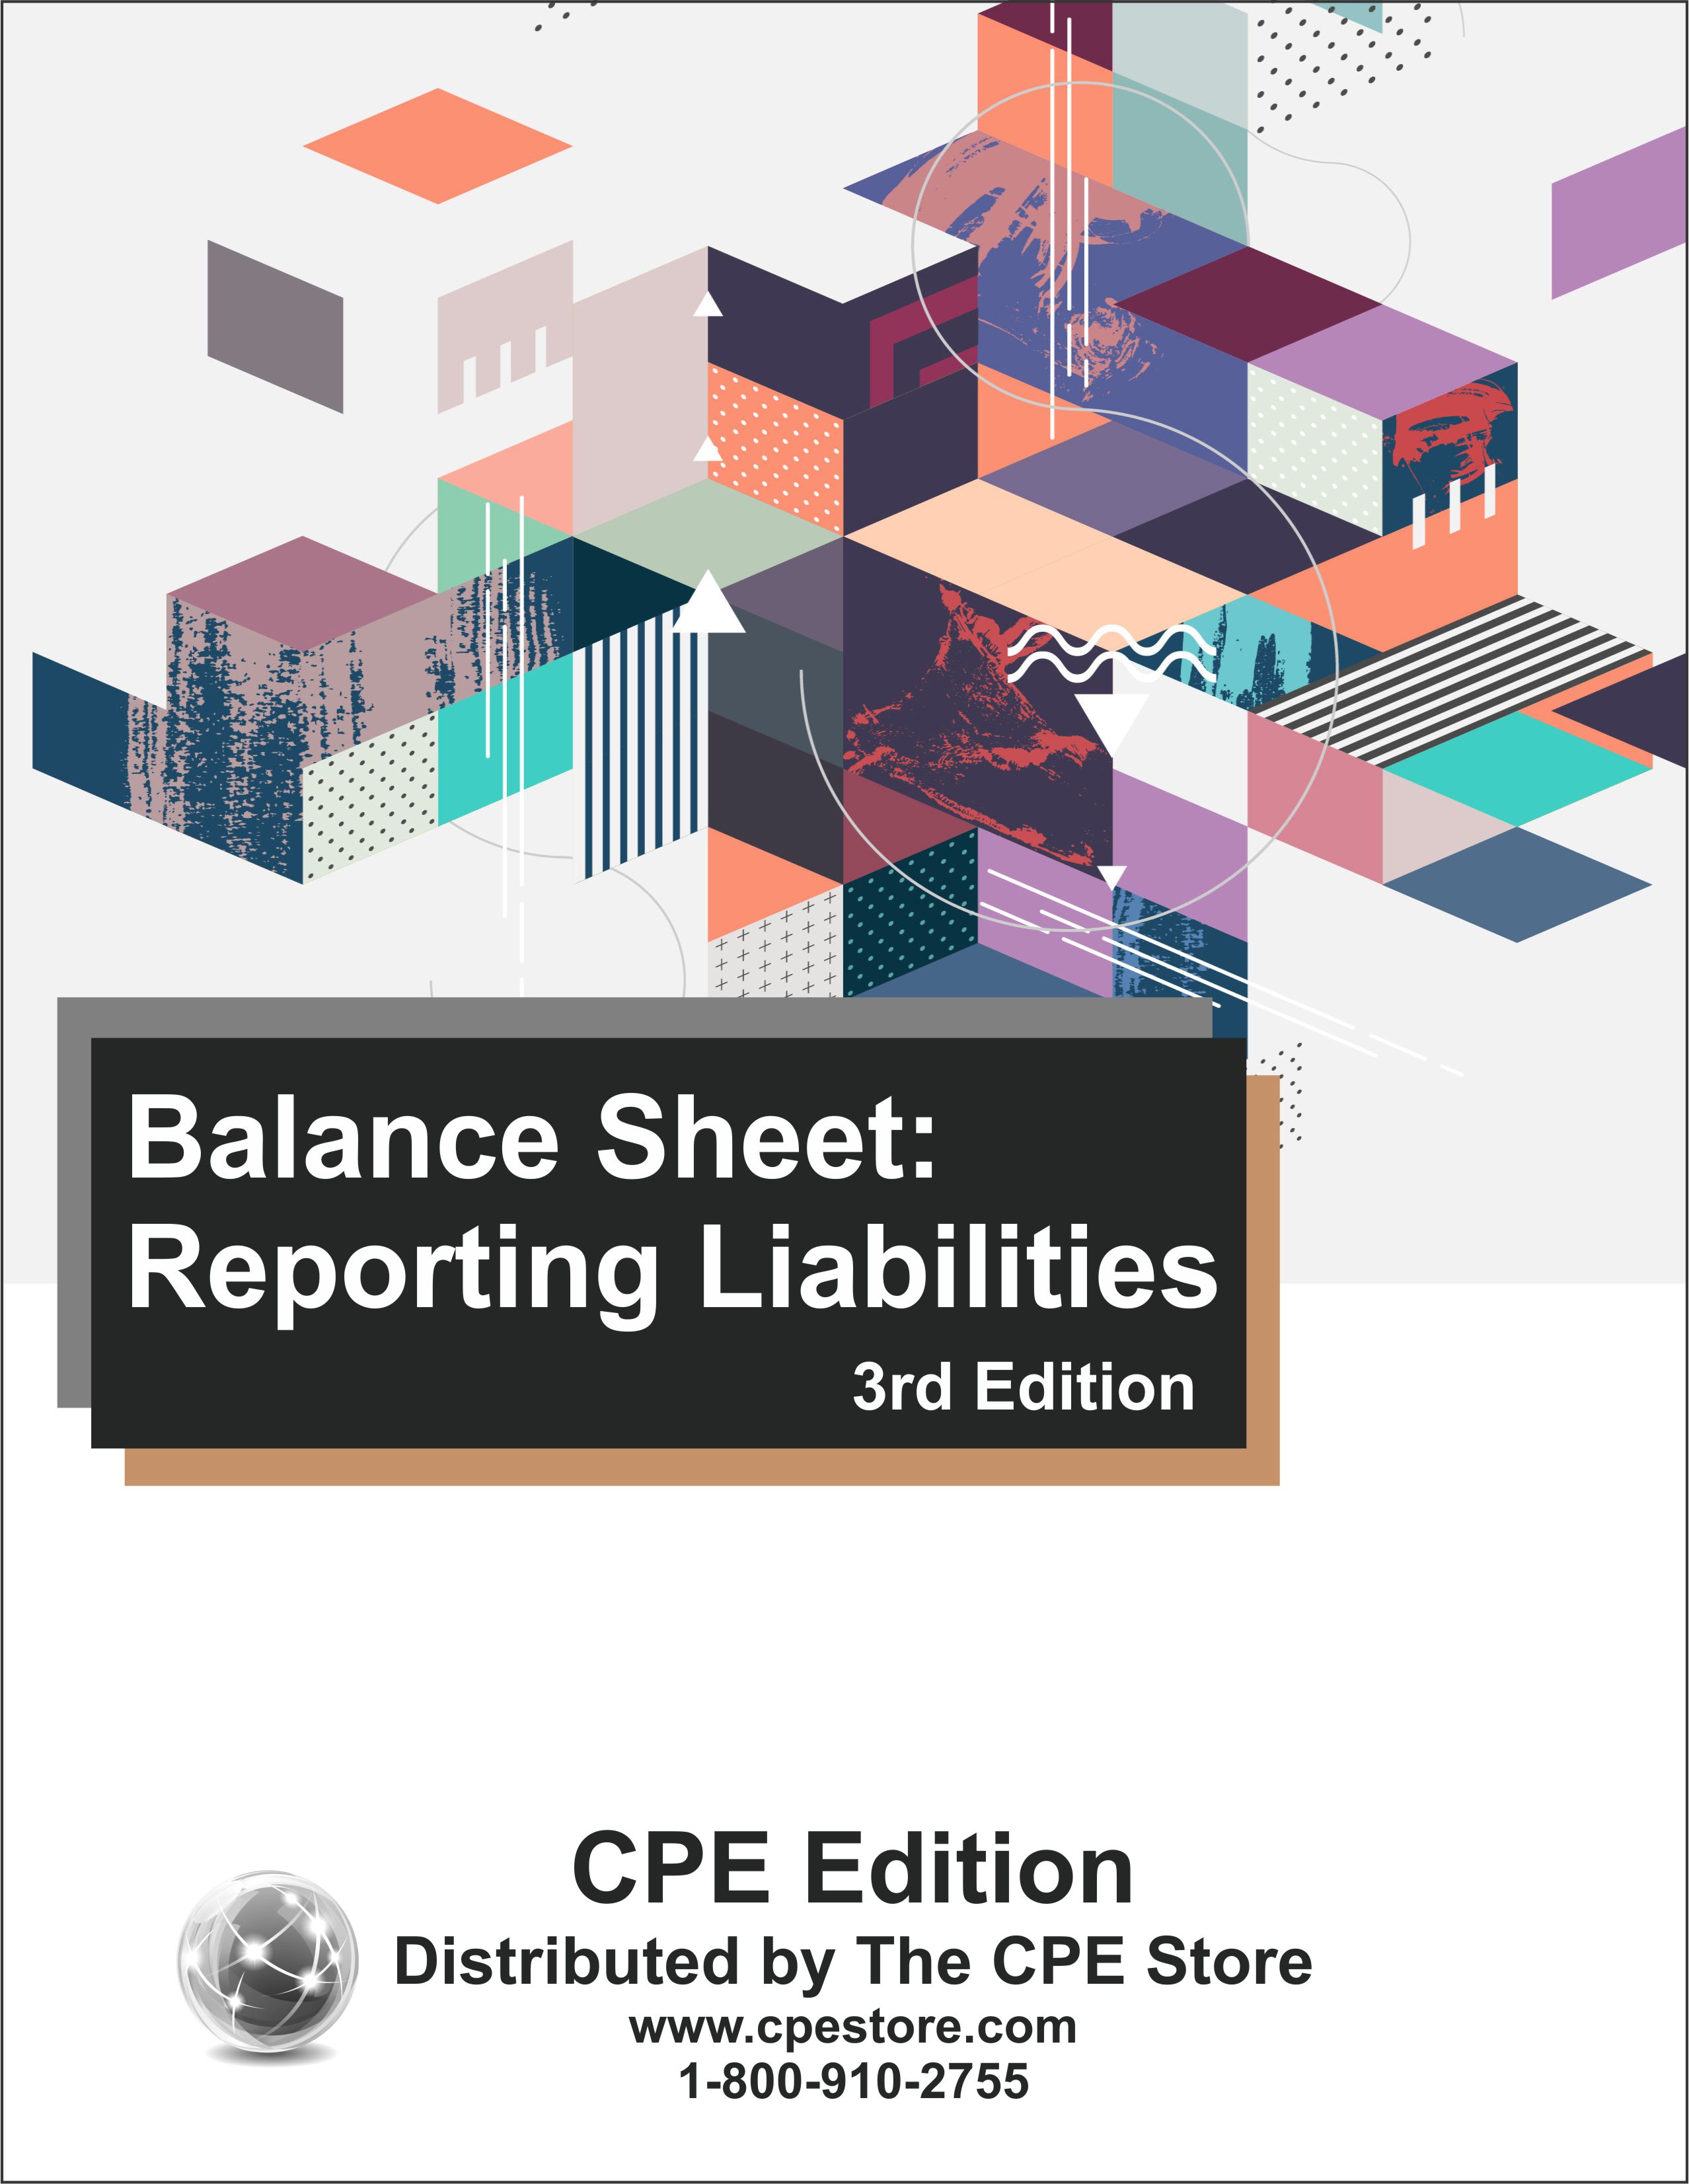 Balance Sheet: Reporting Liabilities